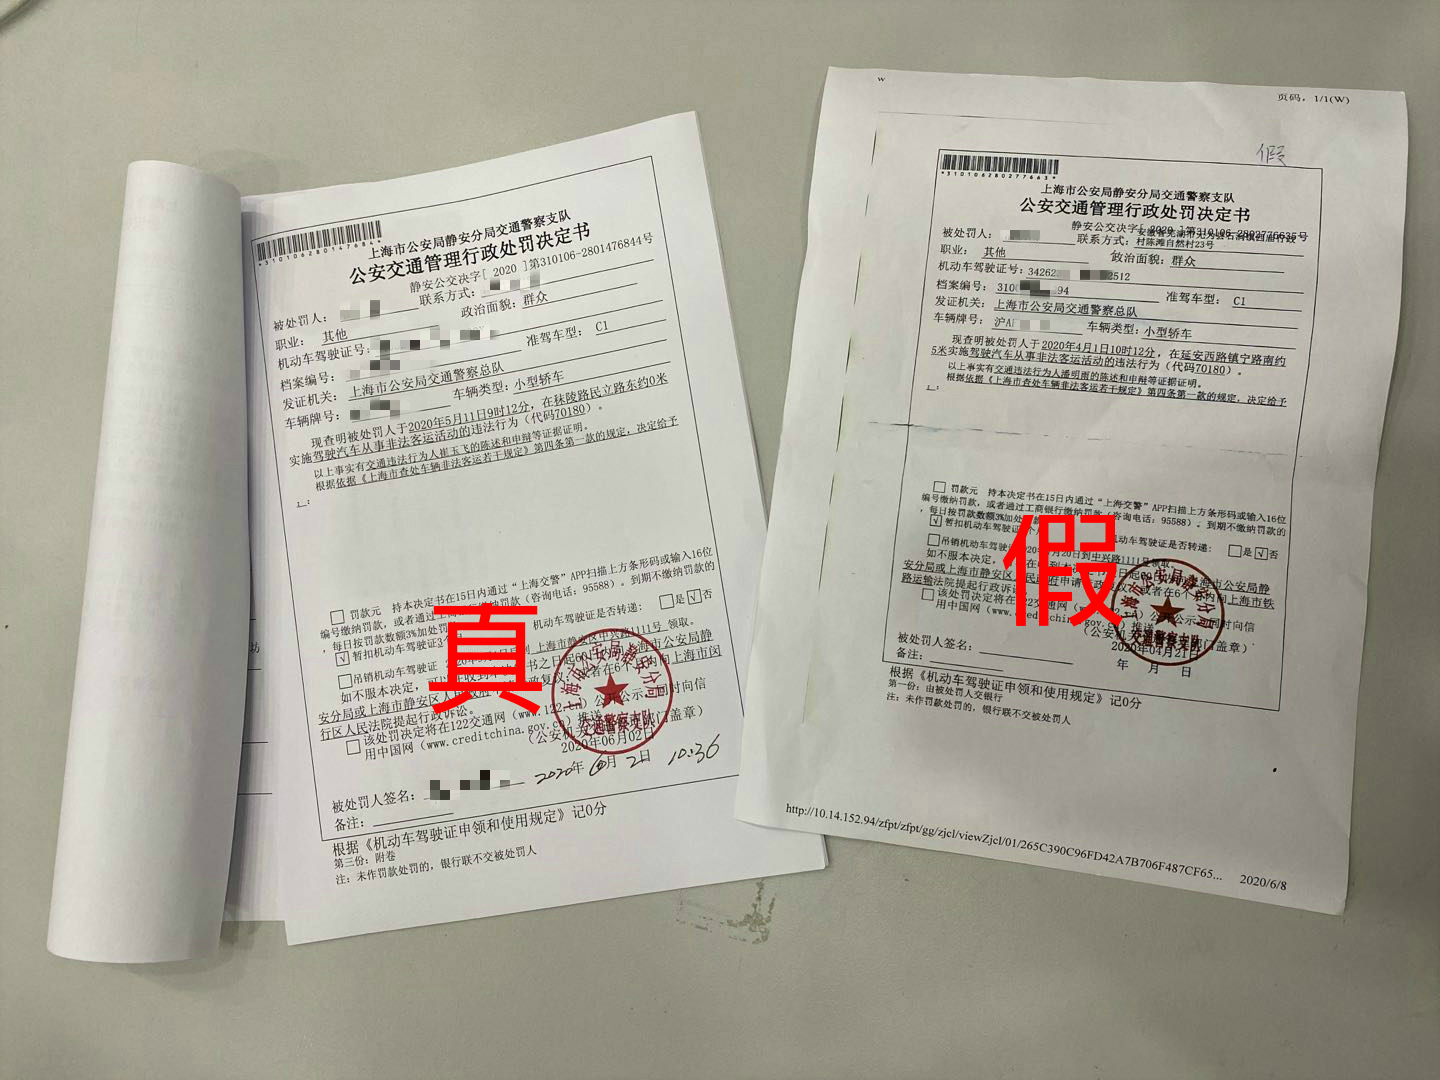 上海警方查获近90名网约车司机 伪造公文躲避扣证处罚 这个管理漏洞要补上